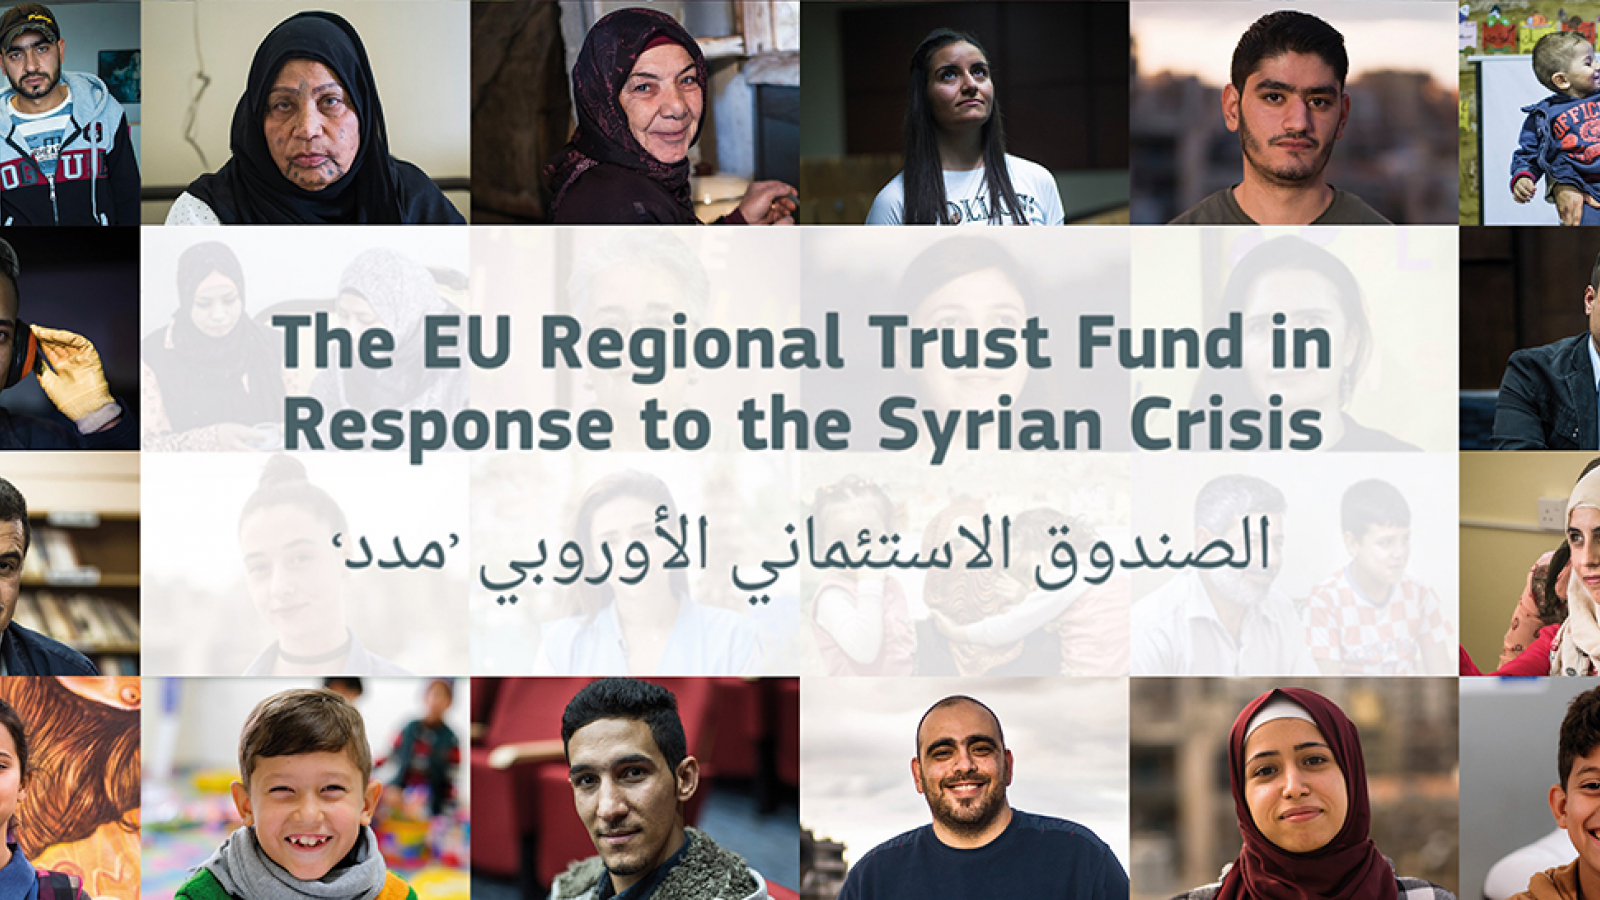 ©Fonds fiduciaire régional de l’UE en réponse à la crise syrienne